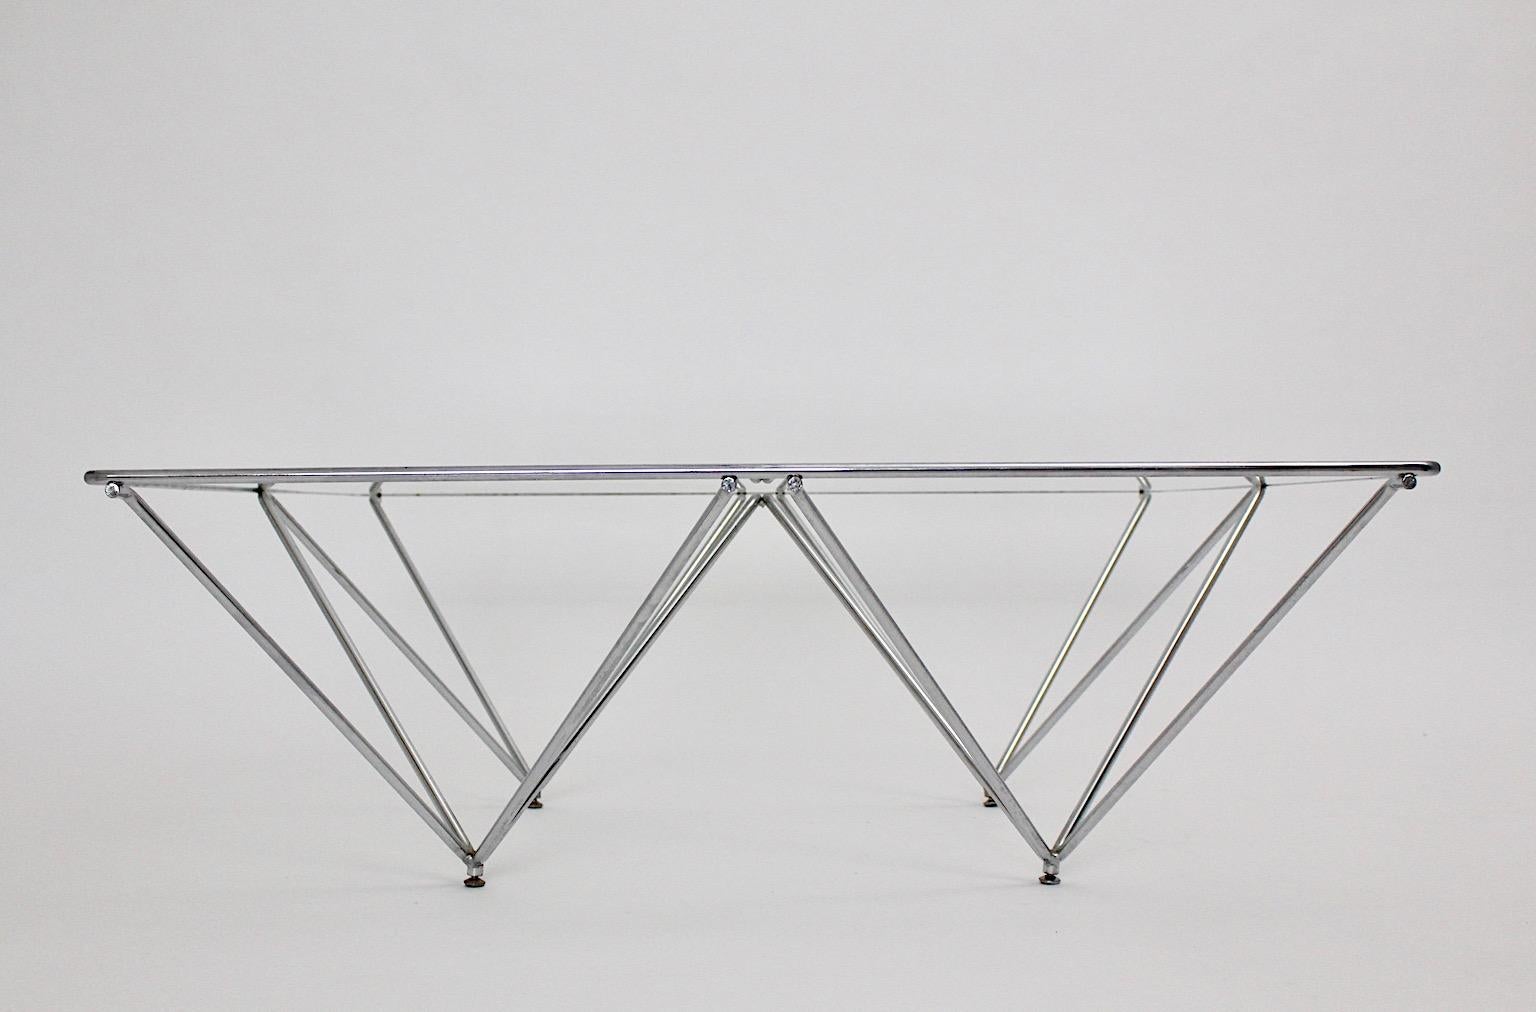 Table de canapé ou table basse moderne vintage en tube d'acier chromé et plateau en verre transparent années 1980 Italie.
La construction en tube d'acier chromé témoigne d'un design épuré et ajoute une touche de fraîcheur.
Très bon état
mesures